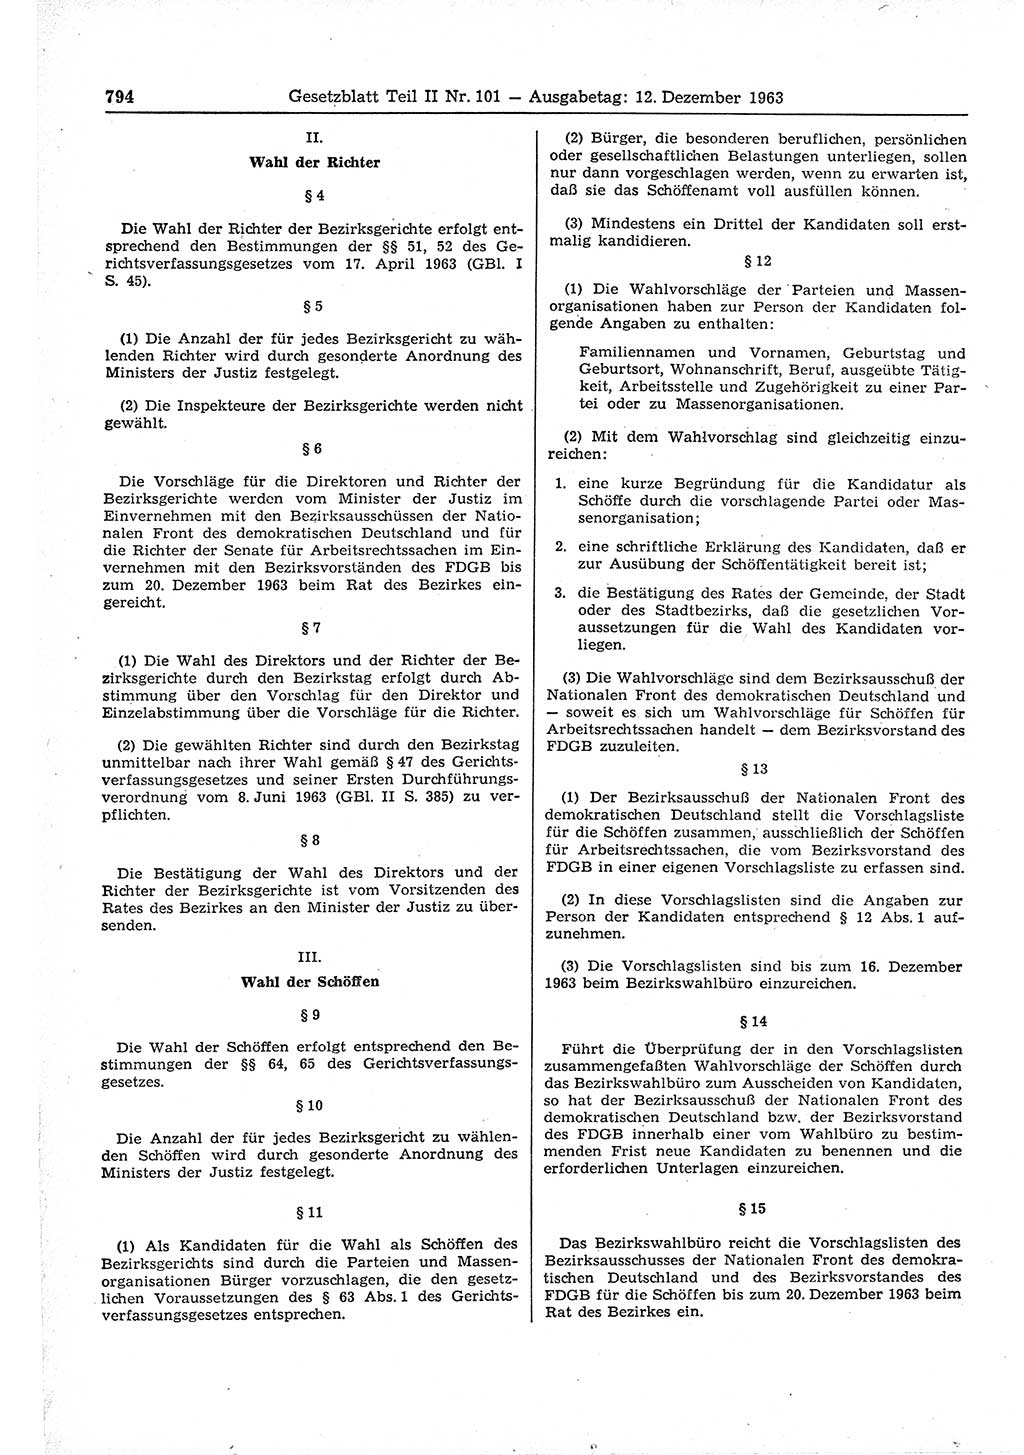 Gesetzblatt (GBl.) der Deutschen Demokratischen Republik (DDR) Teil ⅠⅠ 1963, Seite 794 (GBl. DDR ⅠⅠ 1963, S. 794)